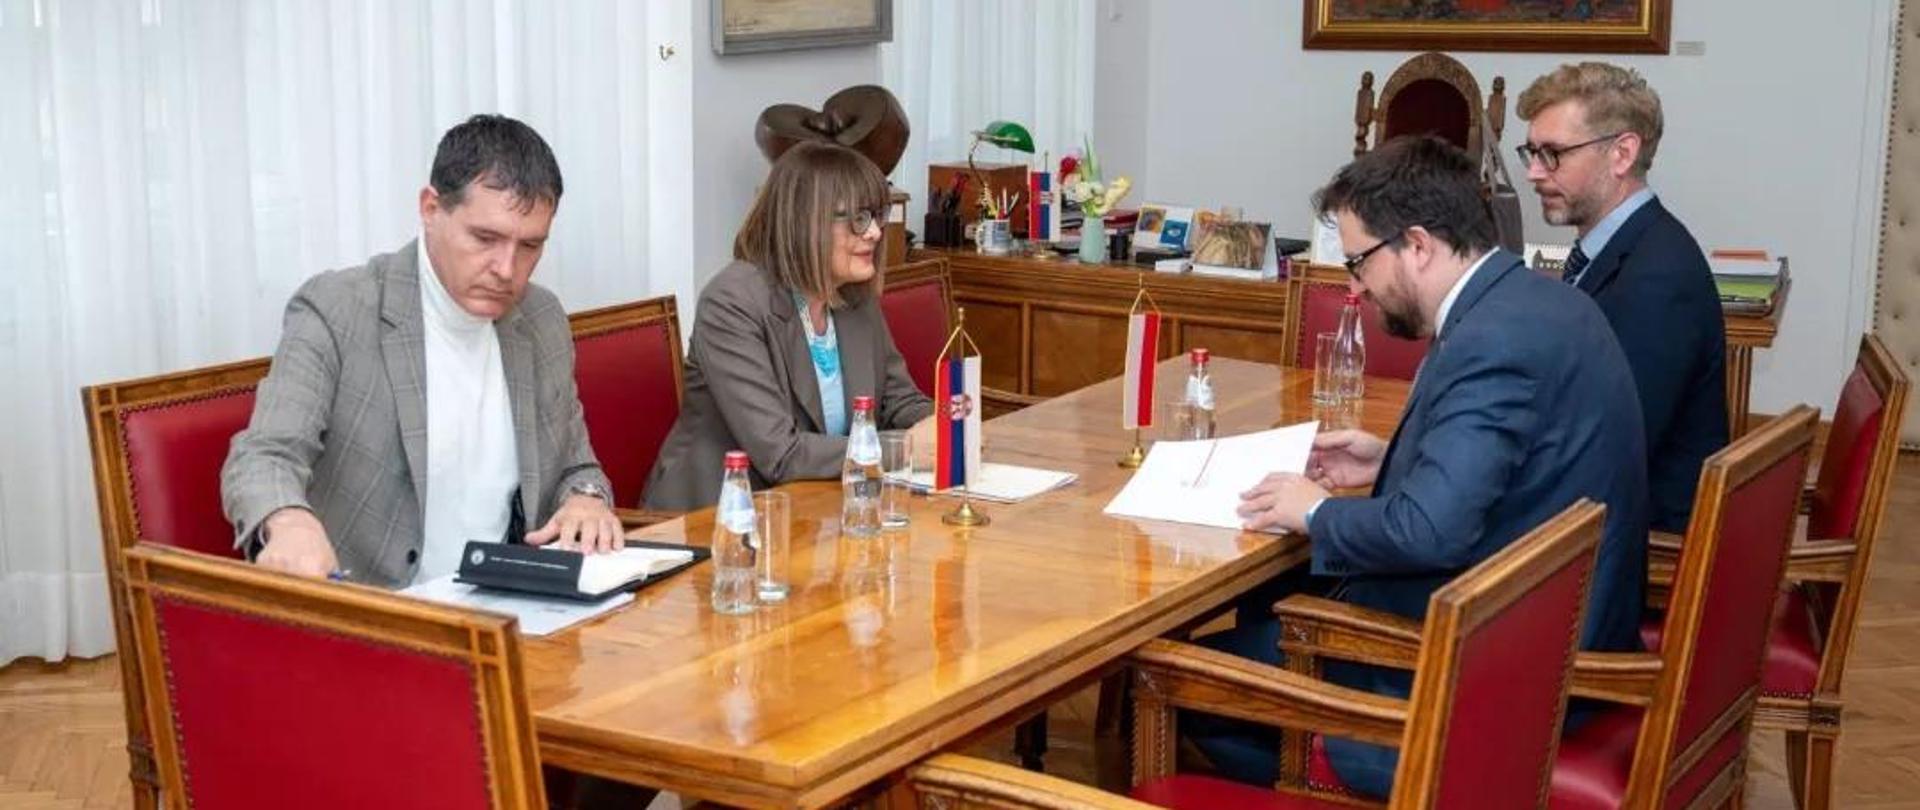 Głównym przedmiotem rozmowy Ambasadora RP oraz dyrektora Instytutu Polskiego w Belgradzie
z serbską minister było formalne przekazanie gospodarzom zaproszenia dla Serbii do udziału
w Międzynarodowych Targach Książki w Warszawie 